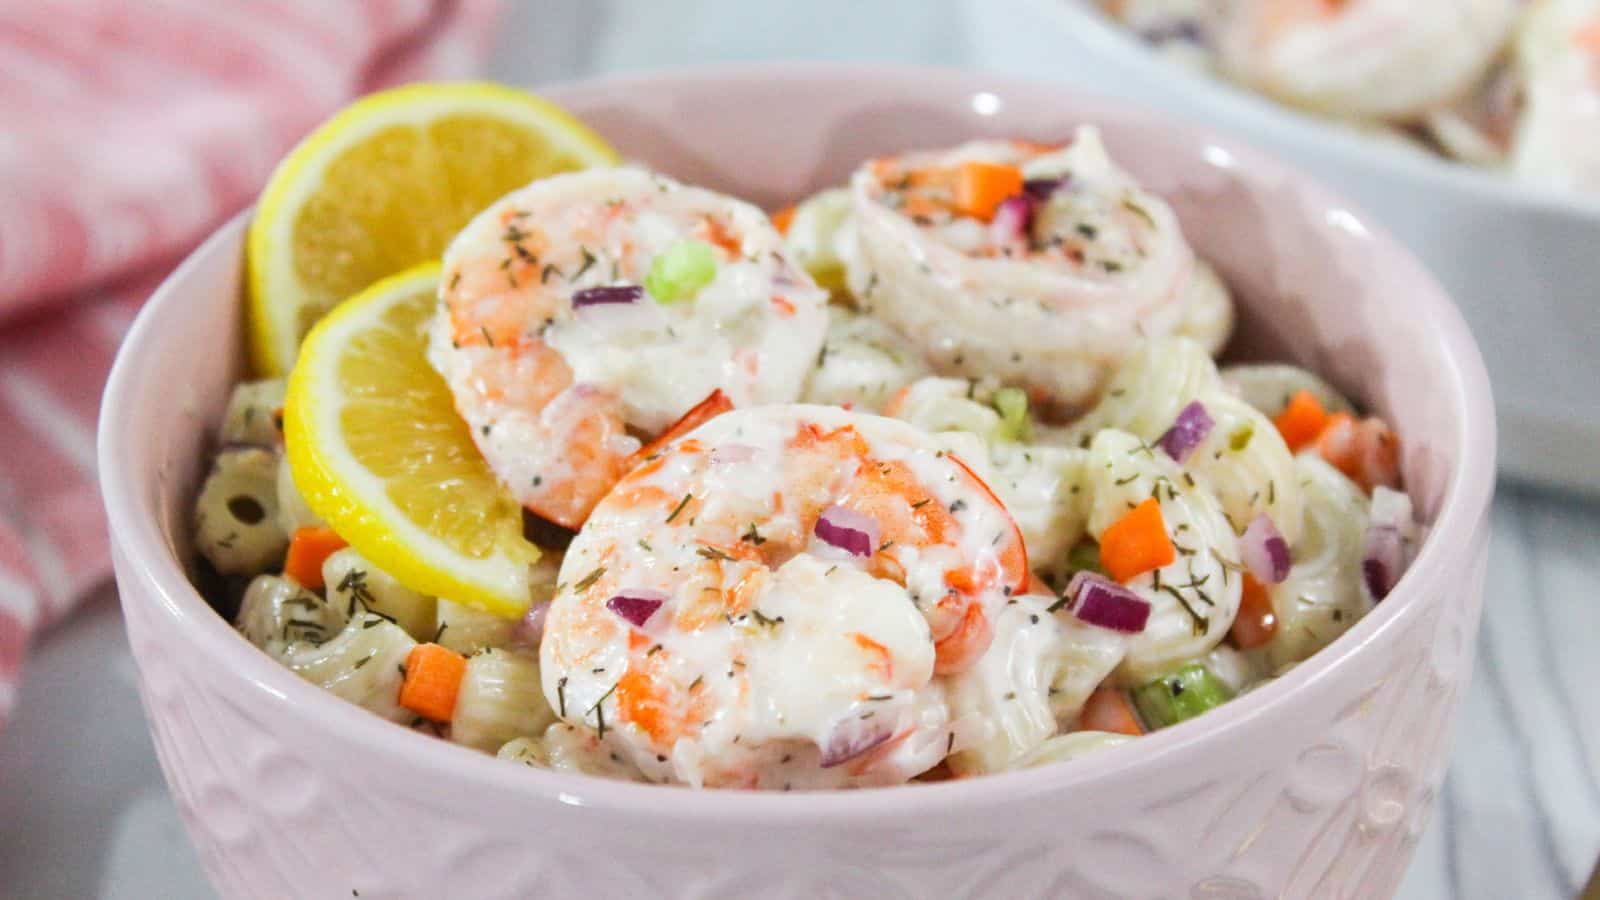 A bowl of shrimp pasta salad garnished with lemon slices and diced vegetables.